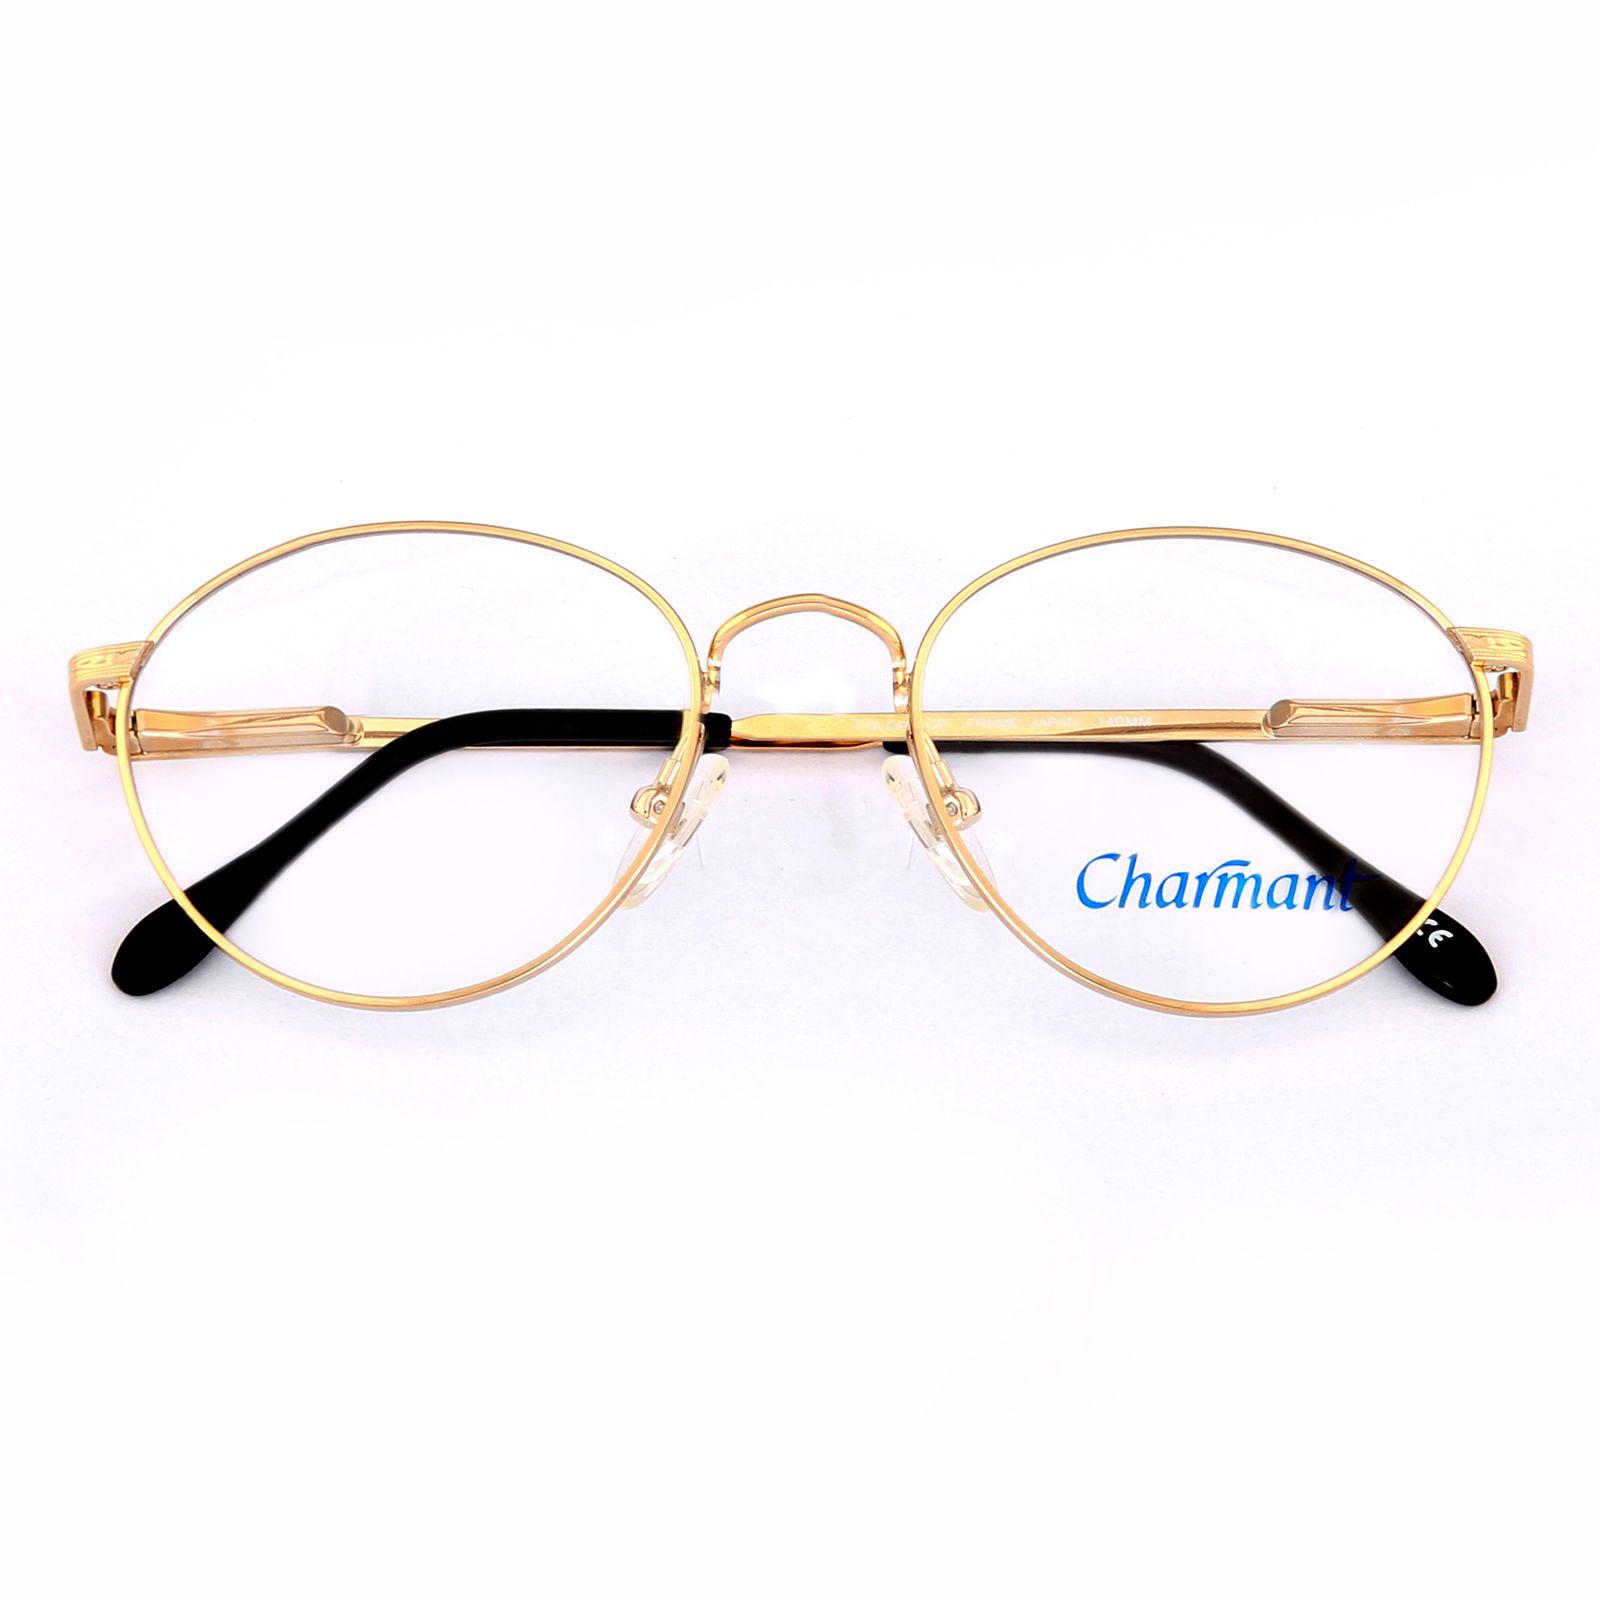 فریم عینک طبی چارمنت مدل 4247 -  - 2